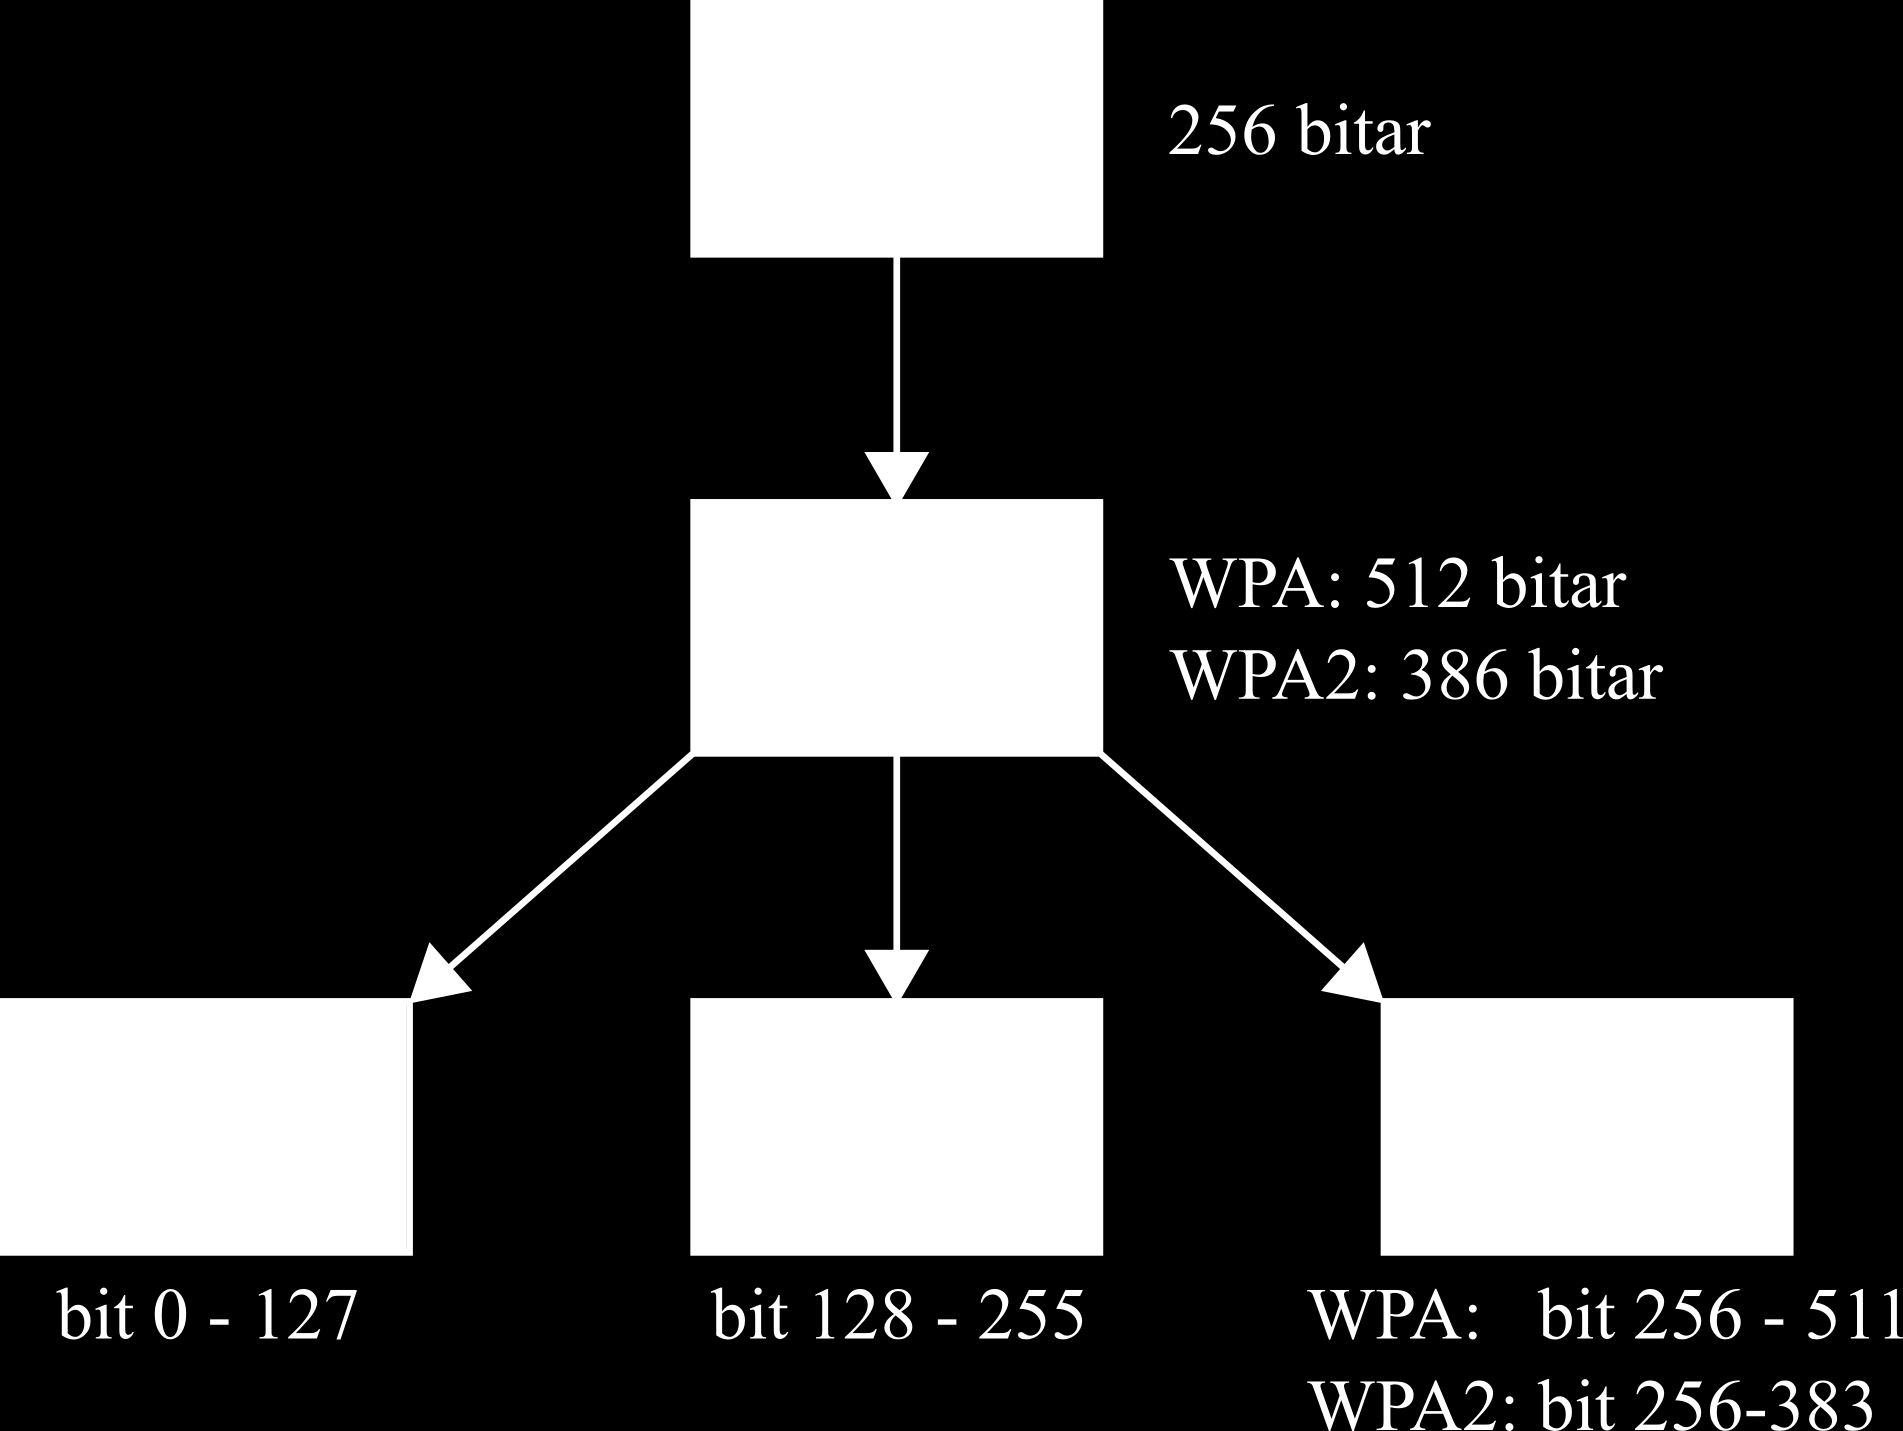 Appendix J Nyckelhierarkin En mindre mängd nycklar används till olika mekanismer i WPA (Wi-Fi Protected Access).